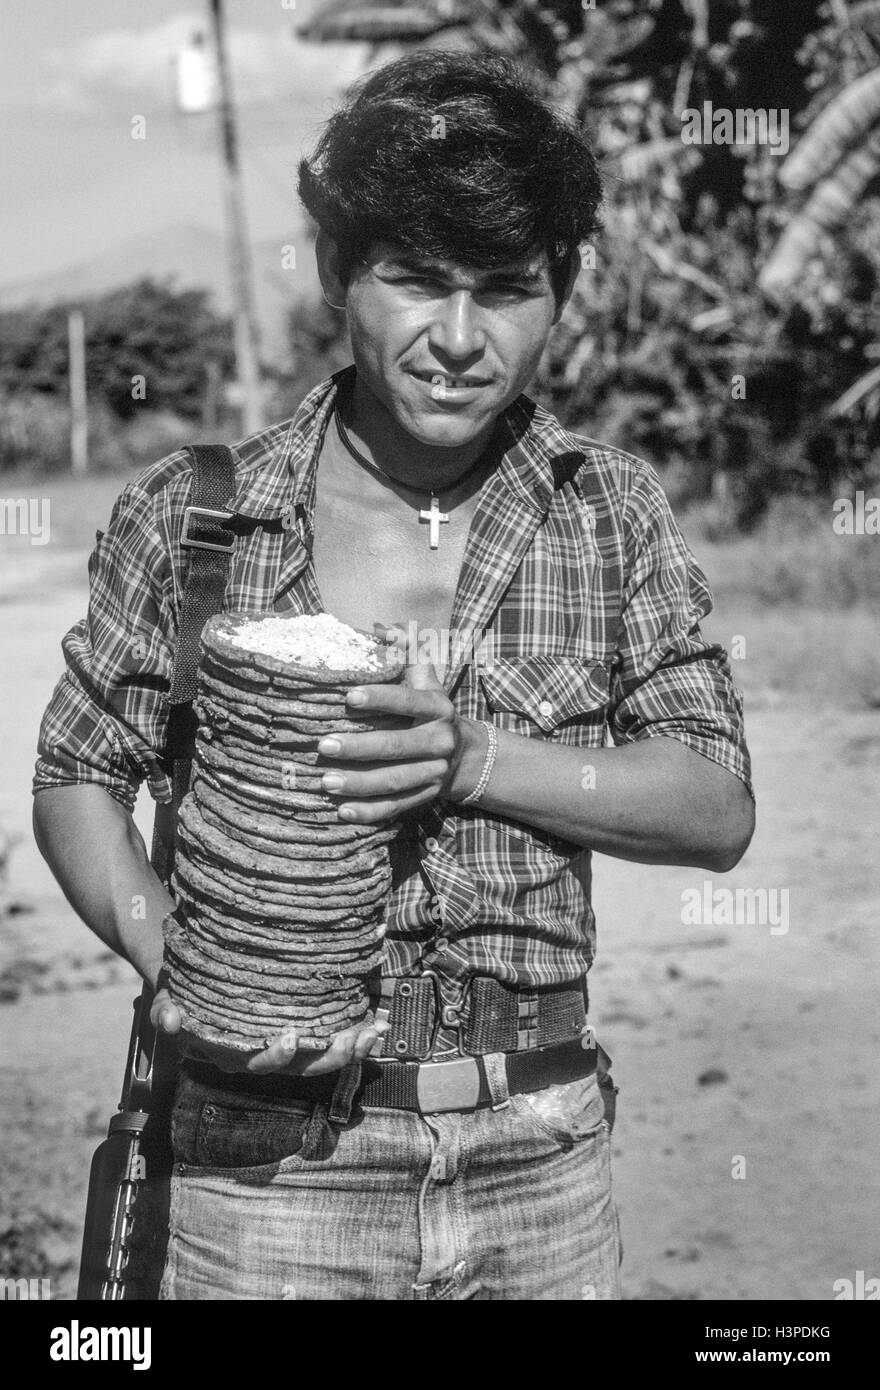 TENANCINGO, EL SALVADOR, März 1984: - im Rahmen der FPL-Guerilla Zonen des Steuerelements. Ein FPL-Kämpfer mit einem Stack von Tortillas und Salz. Stockfoto